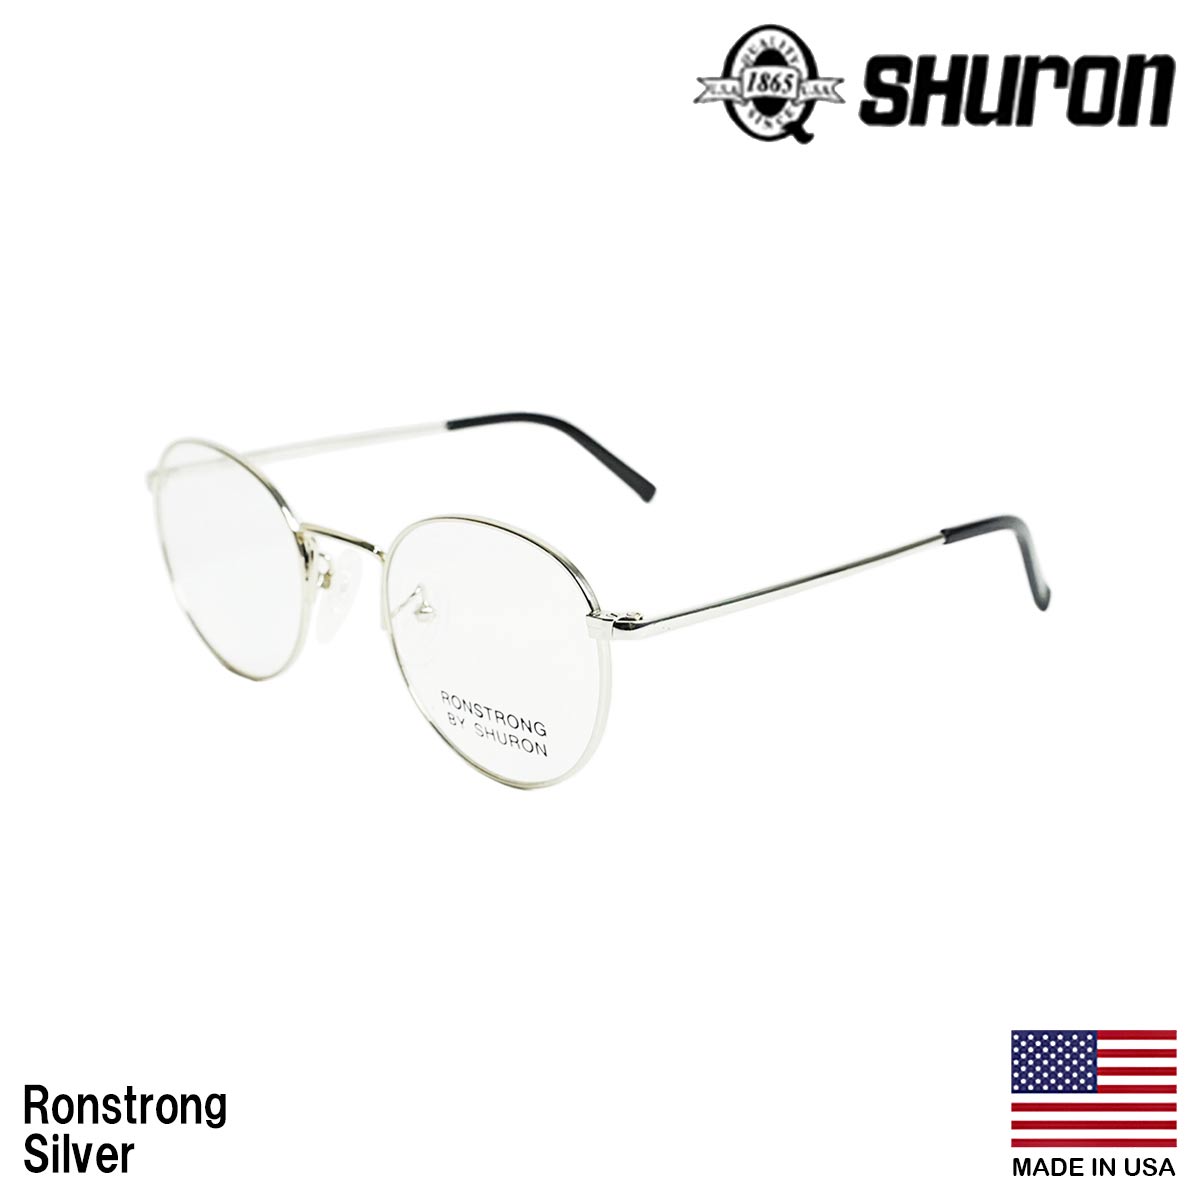 大幅に値引き シュロン SHURON メガネ フレーム ロンストロング 眼鏡 アメリカ製 米国製 ボストン メタルフレーム ゴールド シルバー